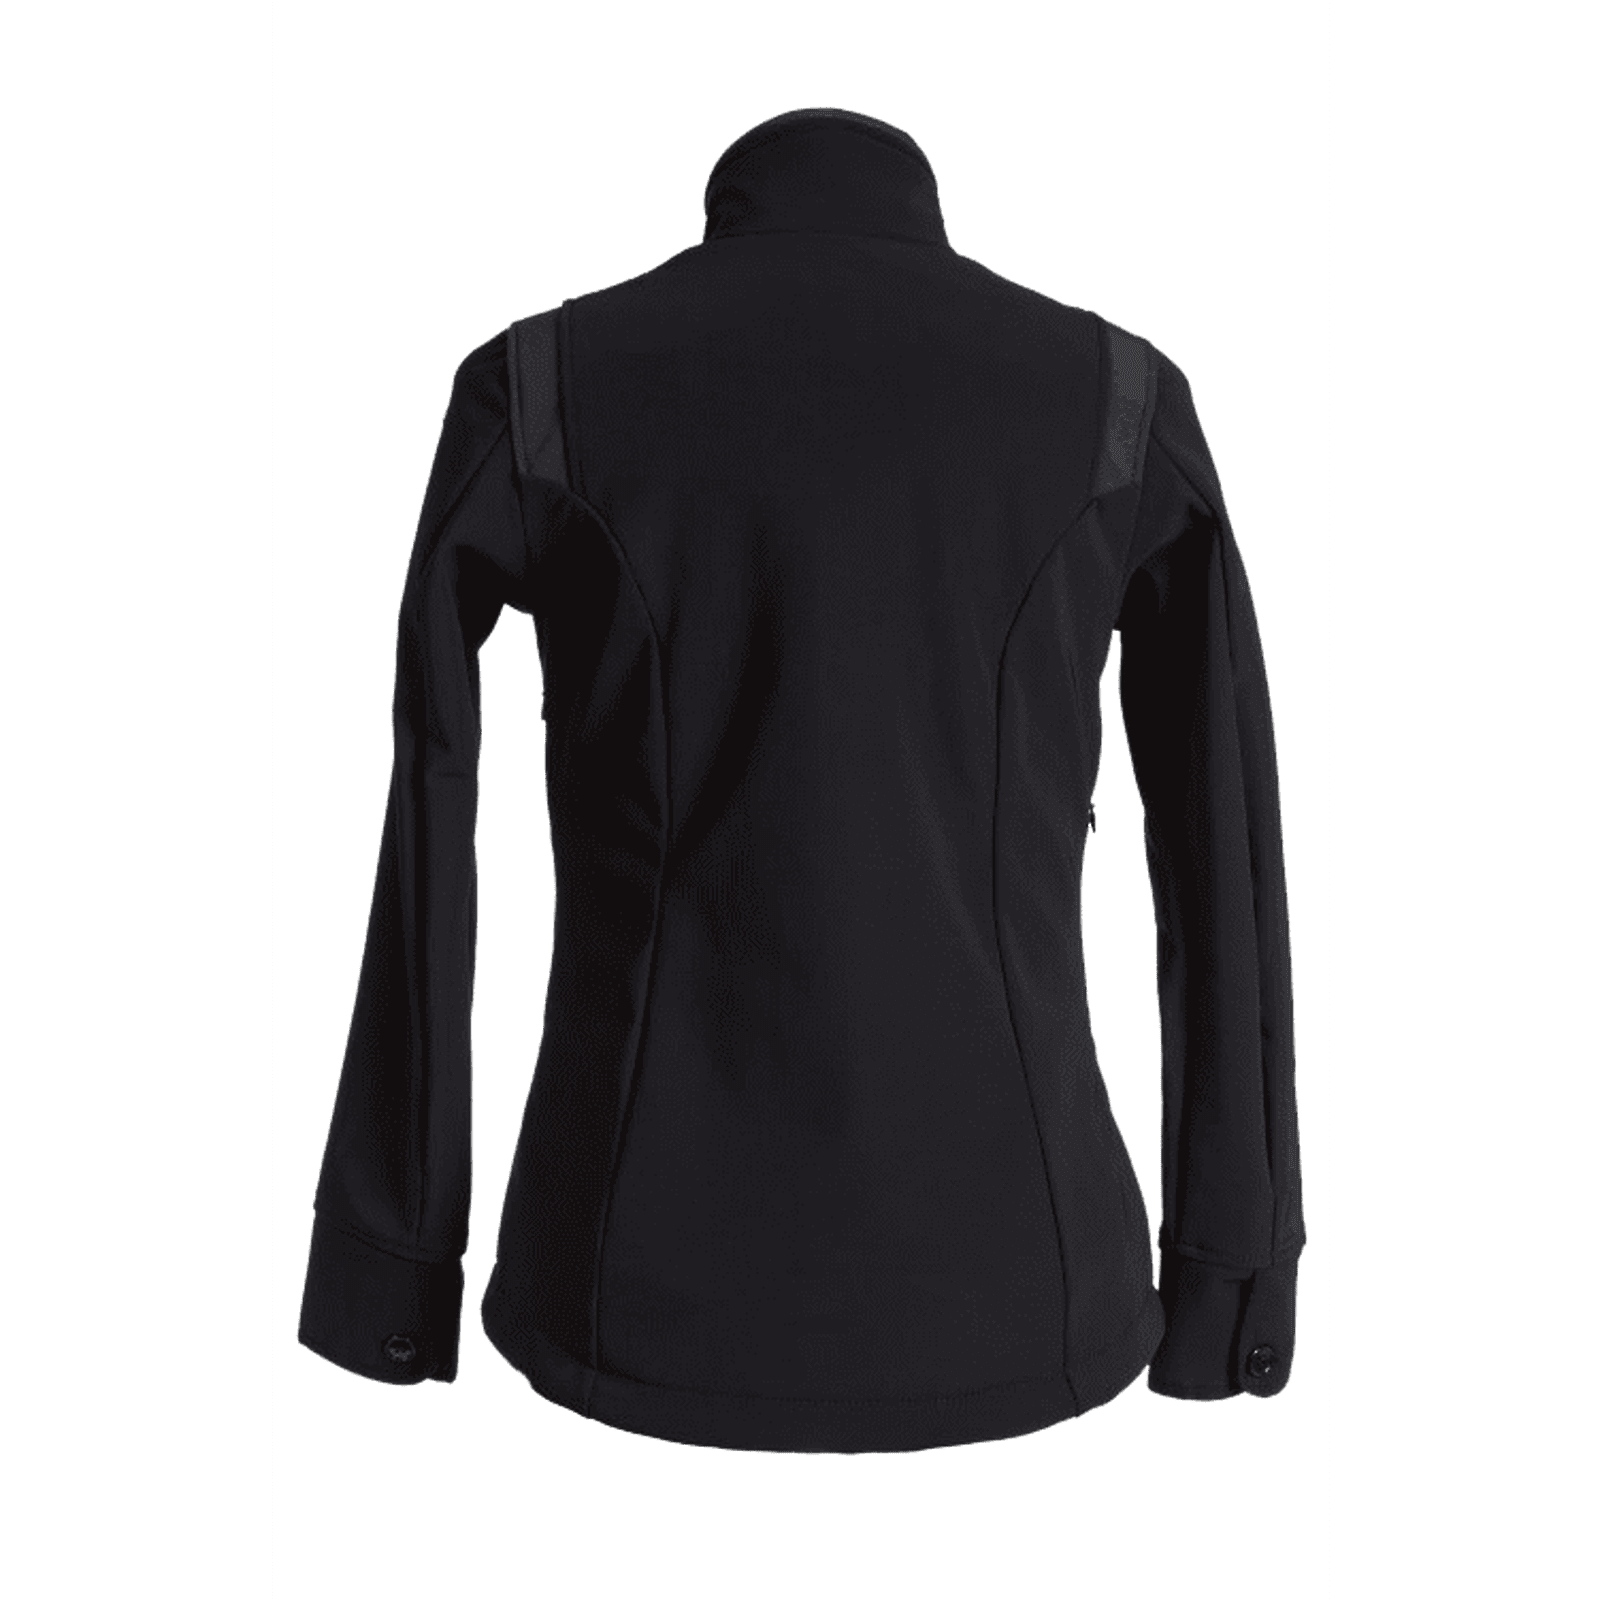 HELITE Airshell-Jacke ohne Airbag in 3 vers. Farben bei SP-Reitsport HELITE bei SP-Reitsport